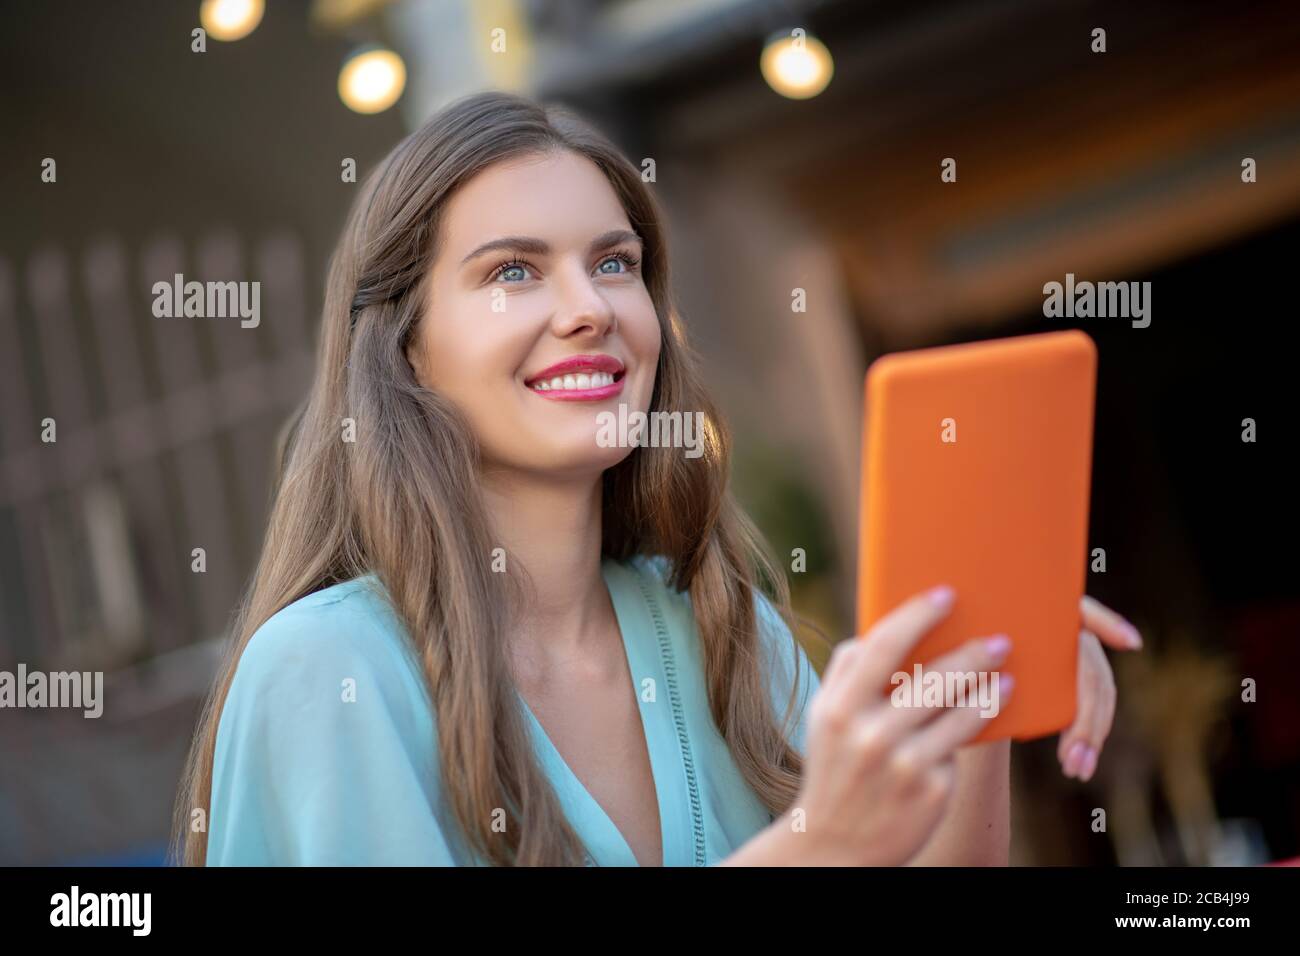 Femme romantique en robe bleue assise à l'extérieur, tenant une tablette orange, souriant Banque D'Images